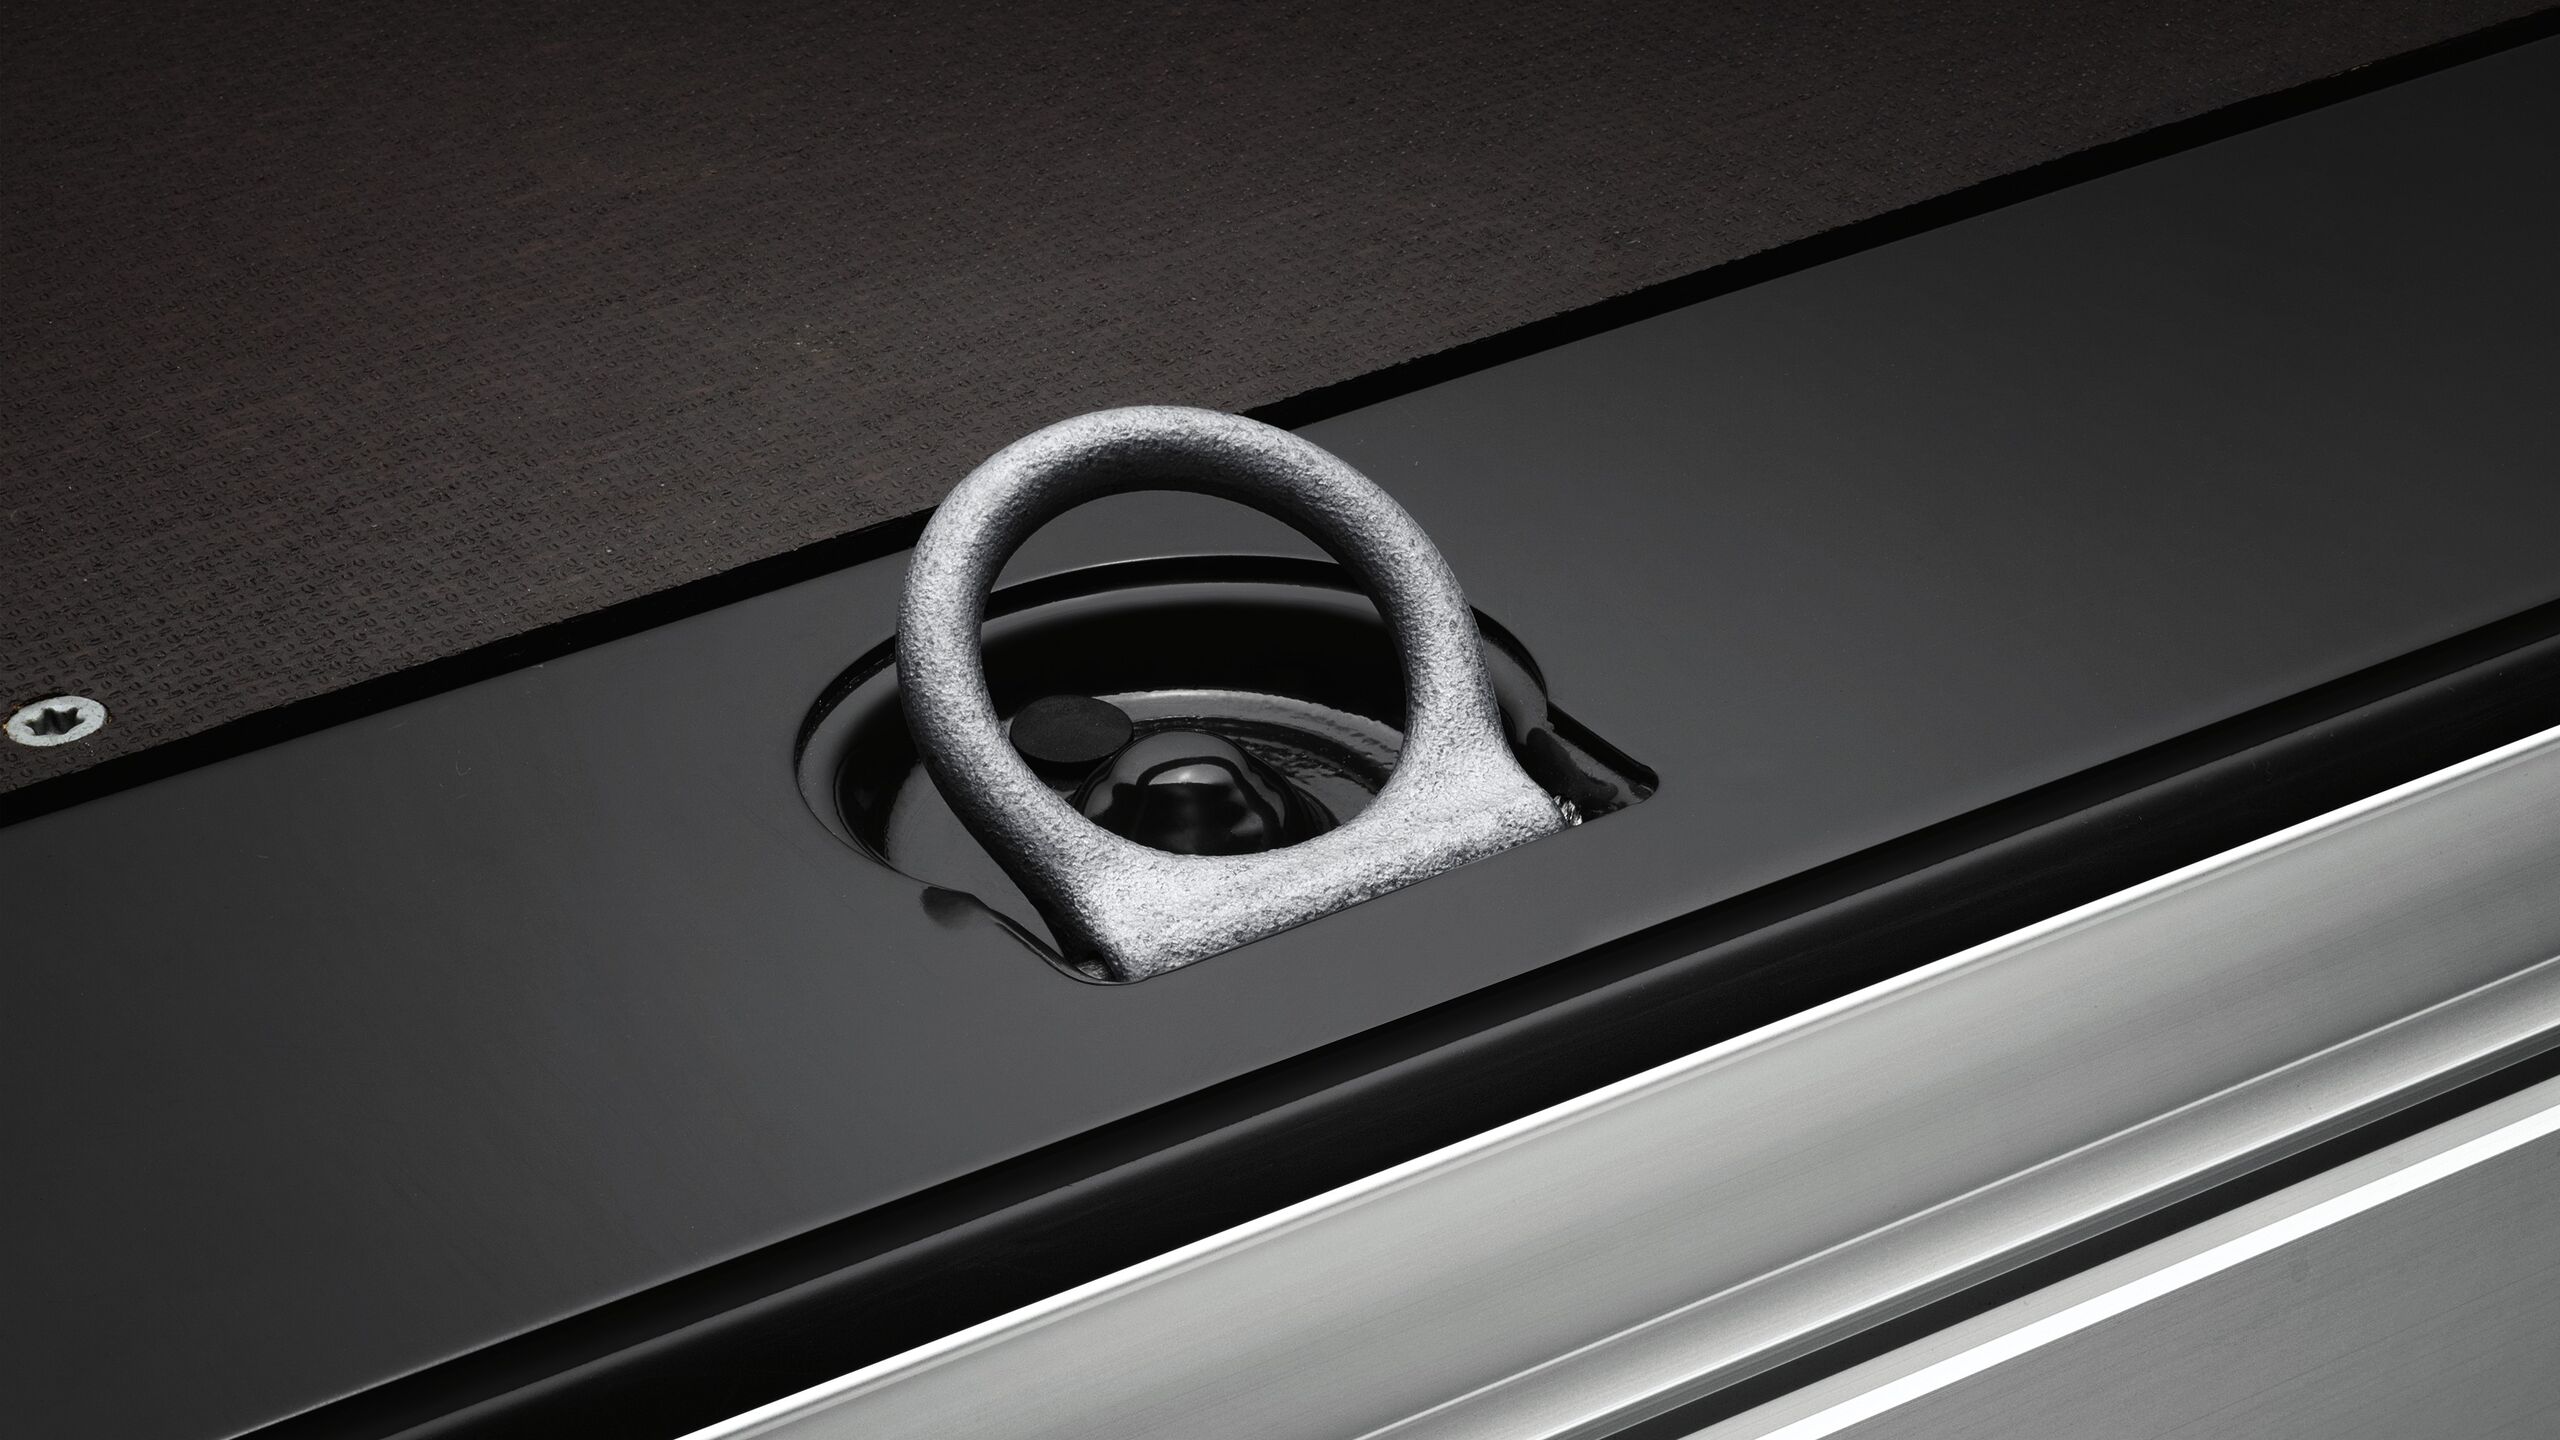 Um olho de fixação de carga da carrinha Volkswagen Crafter.